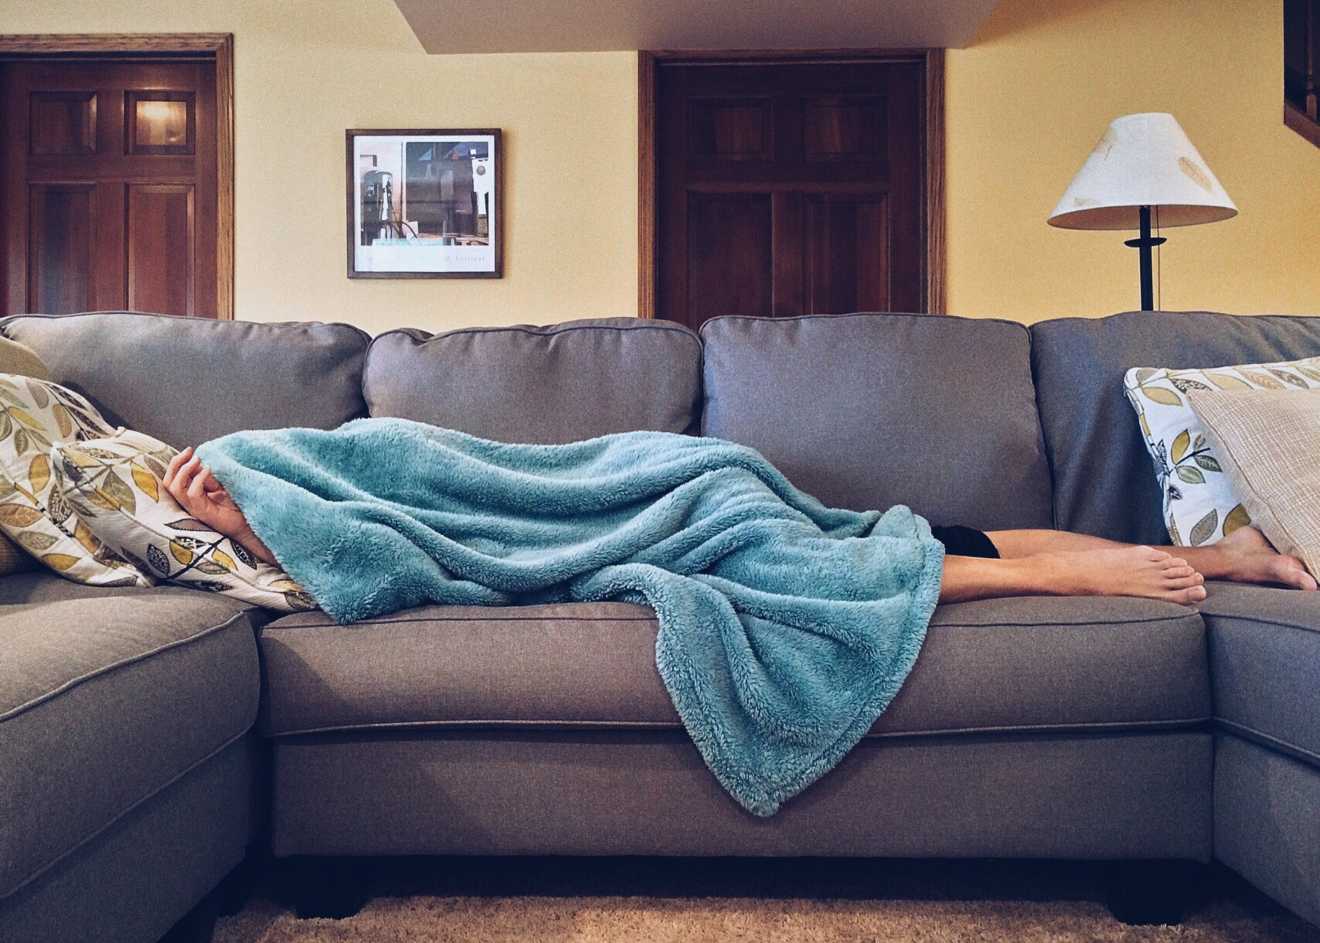 spavanje-uz-upaljen-televizor-moze-imati-ozbiljne-posljedice-na-vase-zdravlje